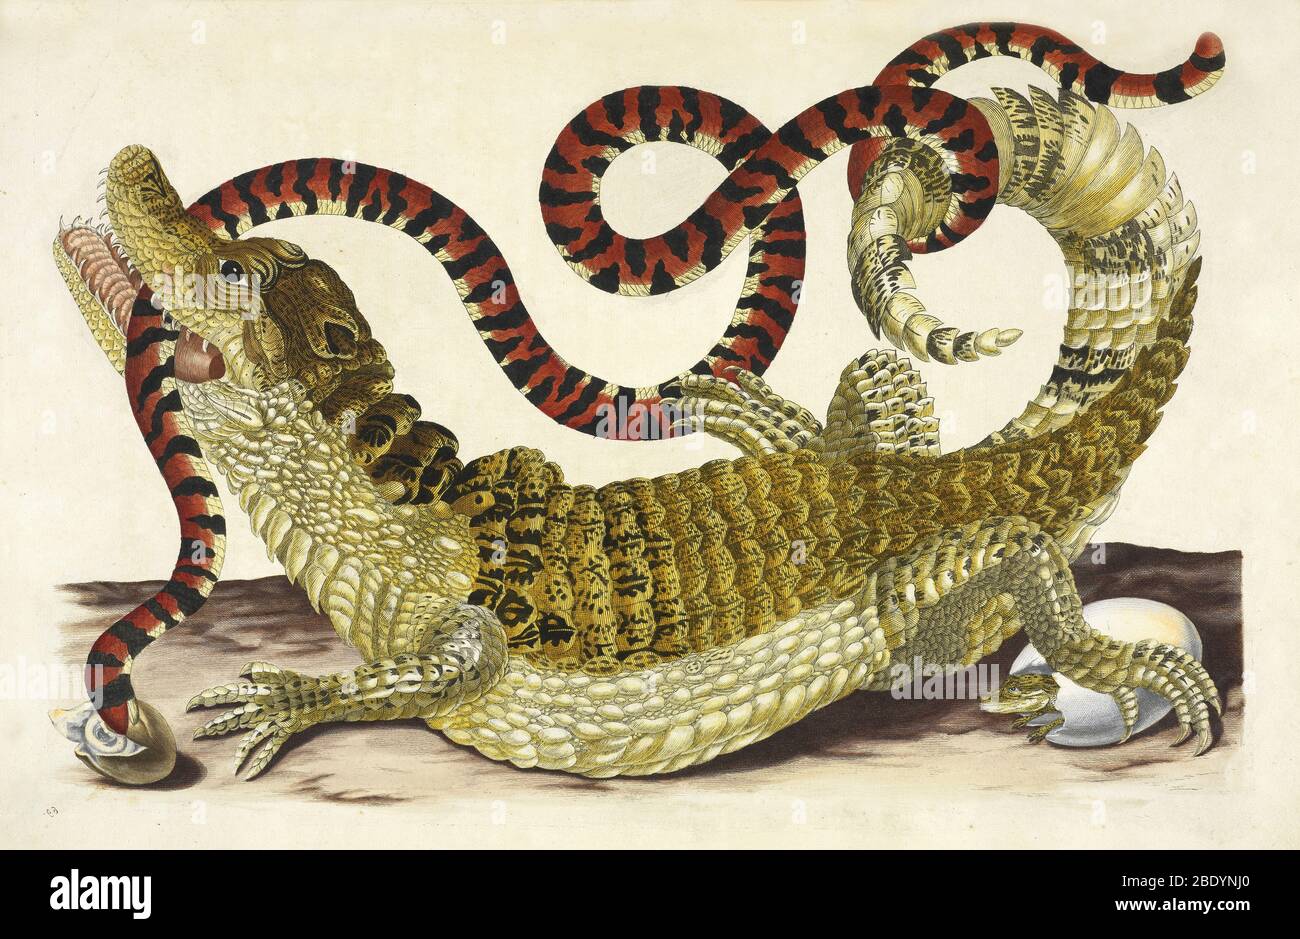 Attaquants de caiman Snake, Maria Merian, 1705 Banque D'Images